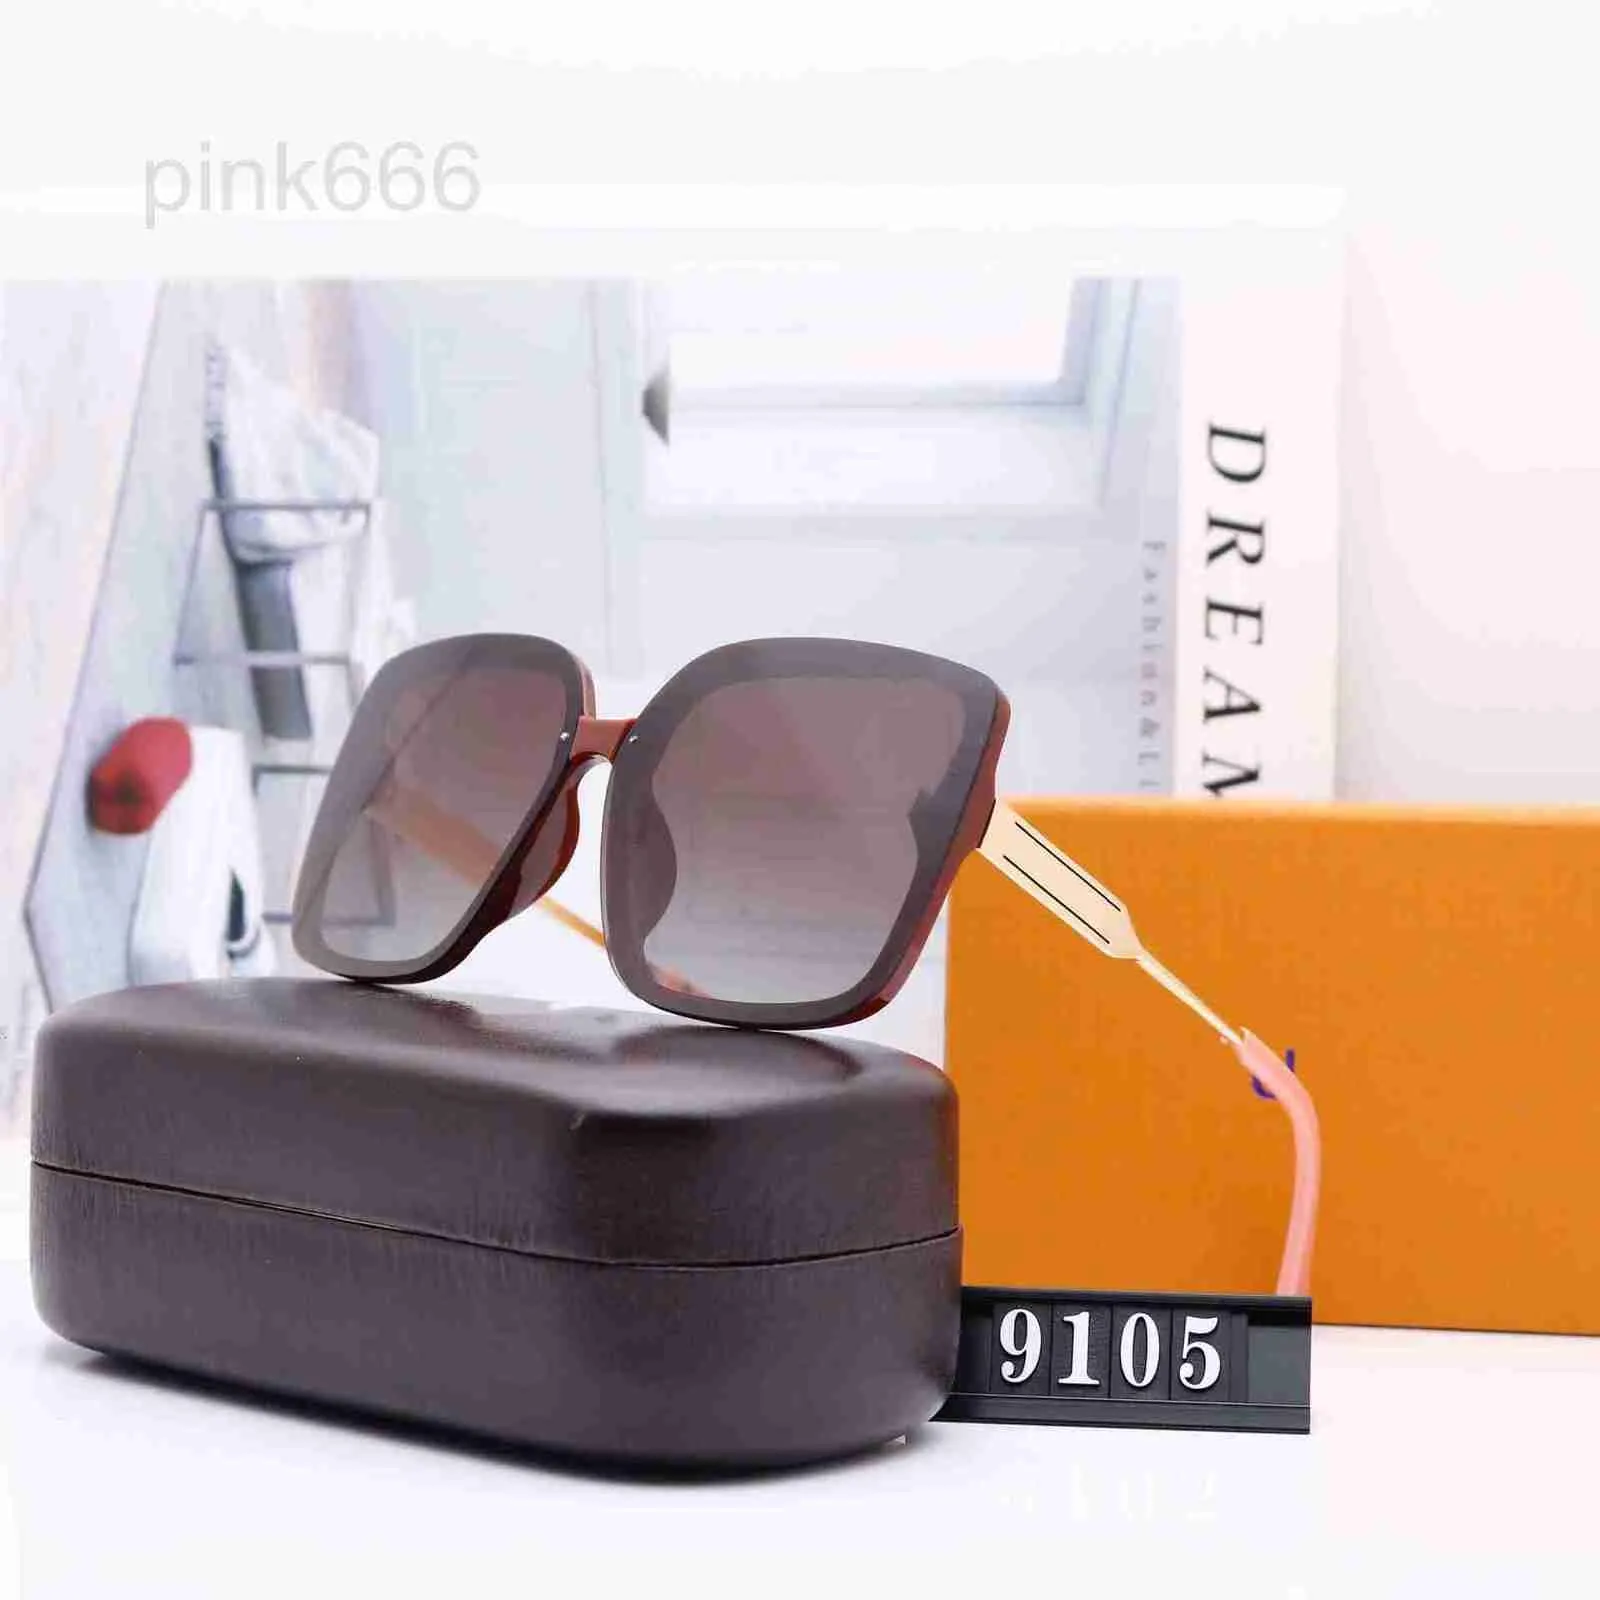 Luxus Quadrat Sonnenbrille Damen Mode Gläser Klassische Marke Designer Retro Sonnenbrille Frauen Sexy Brillen 3R91